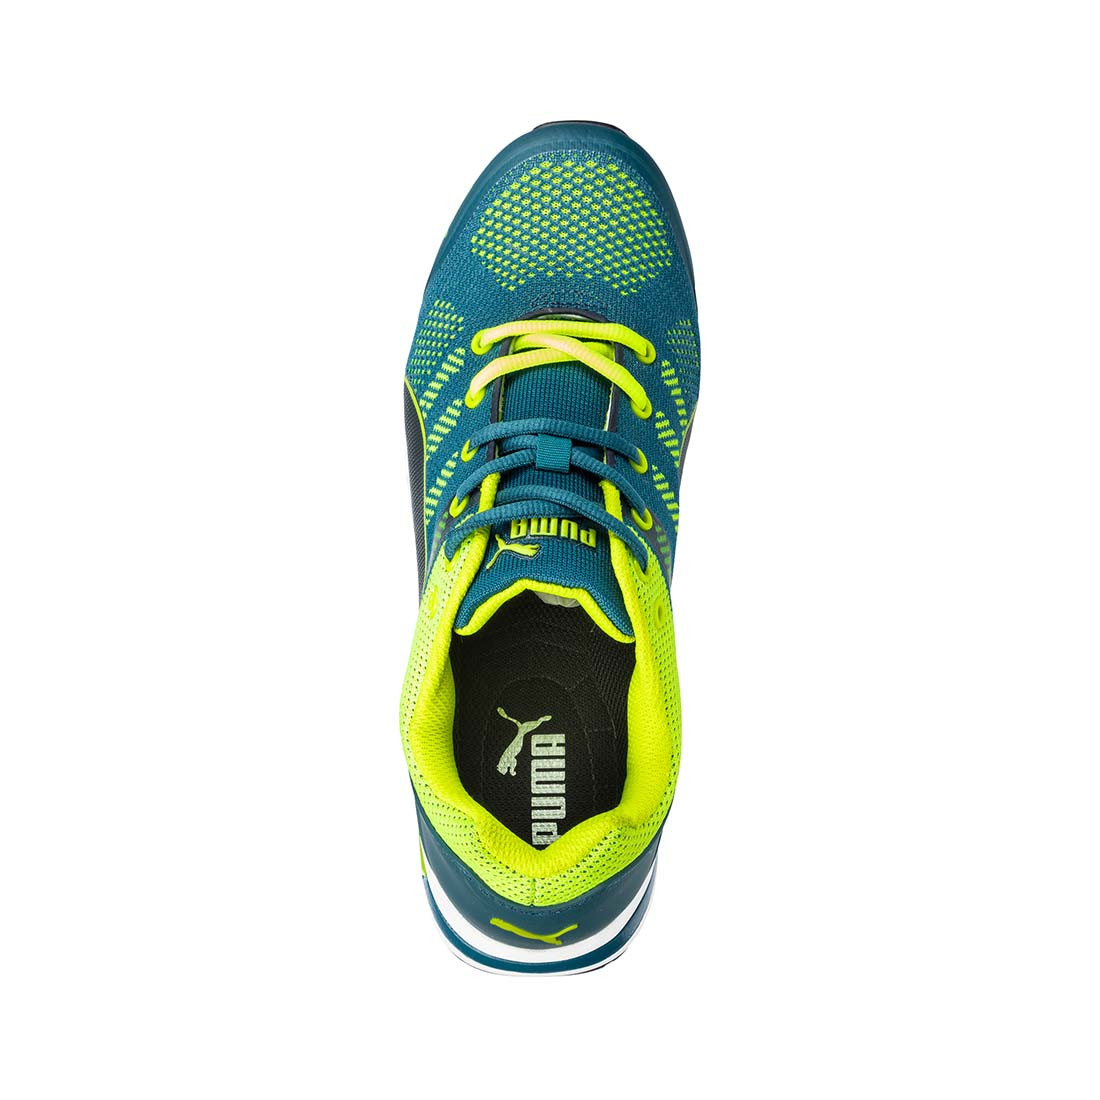 Pantofi de protectie Puma S1P Elevate Knit Green - Incaltaminte de protectie | Bocanci, Pantofi, Sandale, Cizme